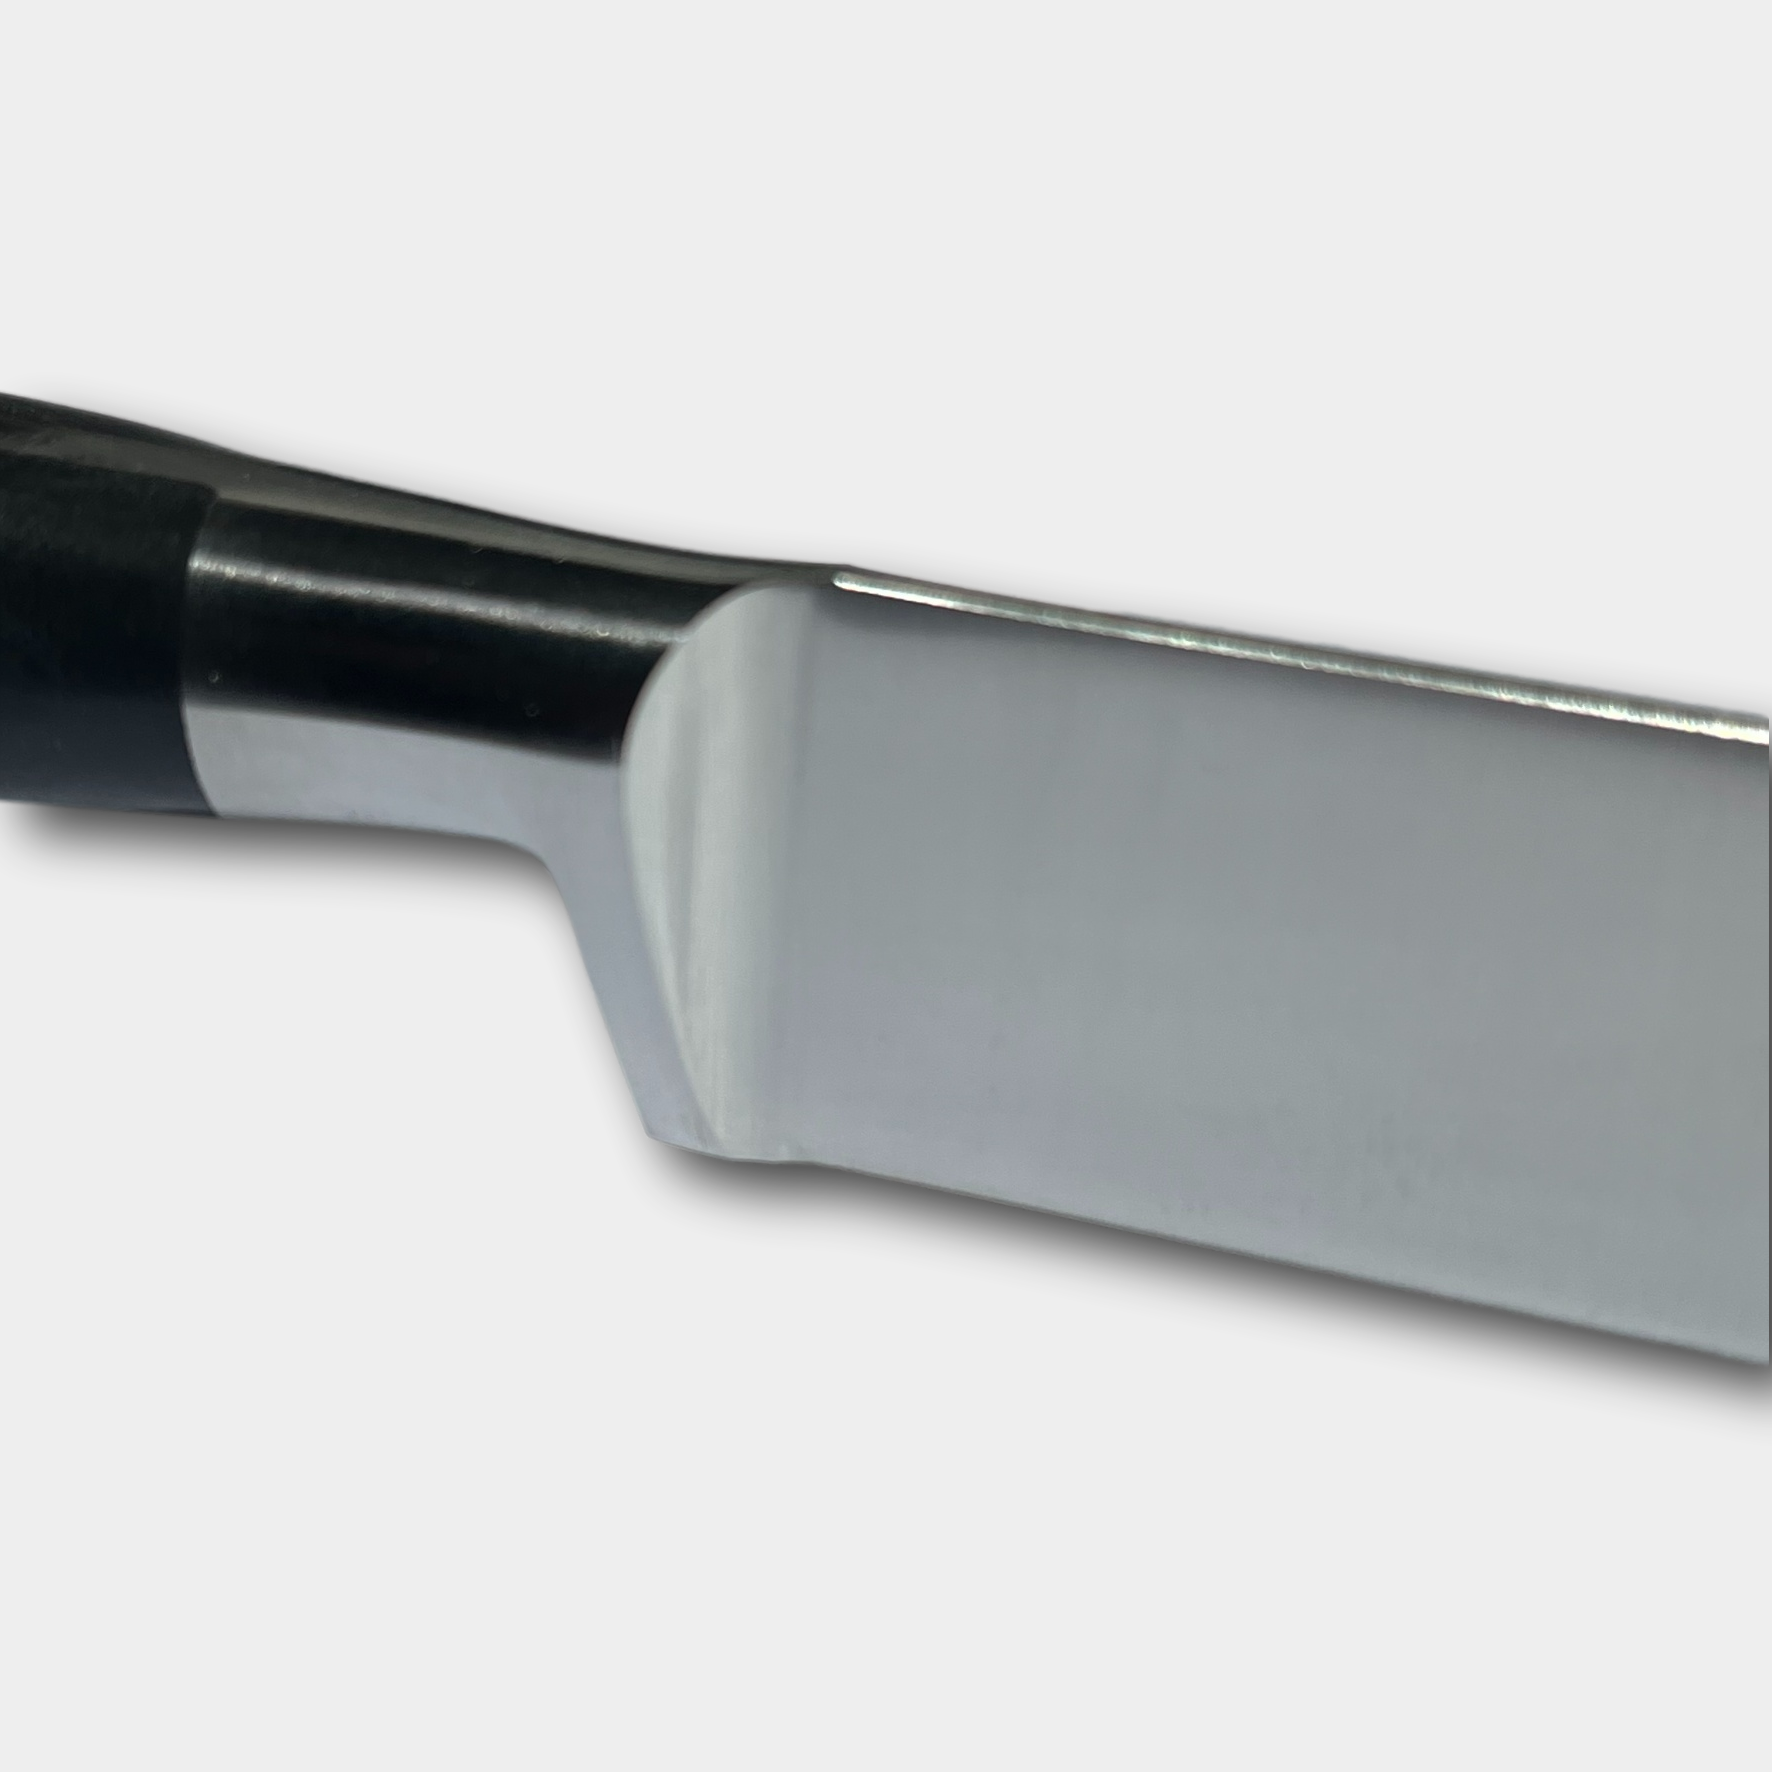 Lion Sabtier Ideal Steel 6cm Peeling Knife